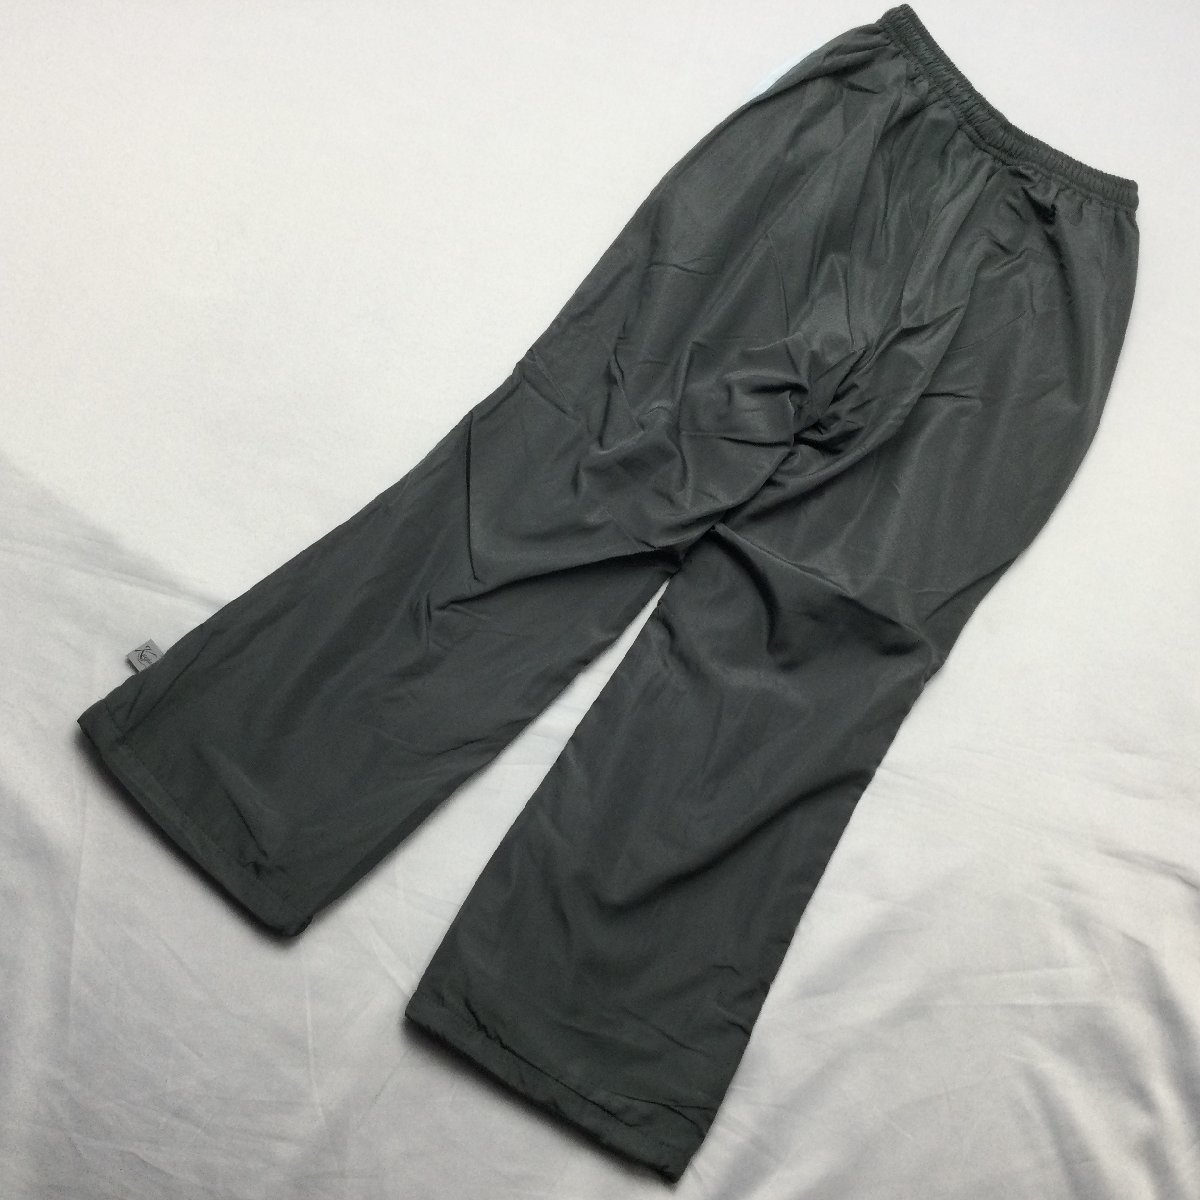 [ бесплатная доставка ][ новый товар ]Kaepa женский брейкер брюки ( с изнанки флис водоотталкивающая отделка UV cut повторный . отражающий кромка ось ) S CGY*SX*223